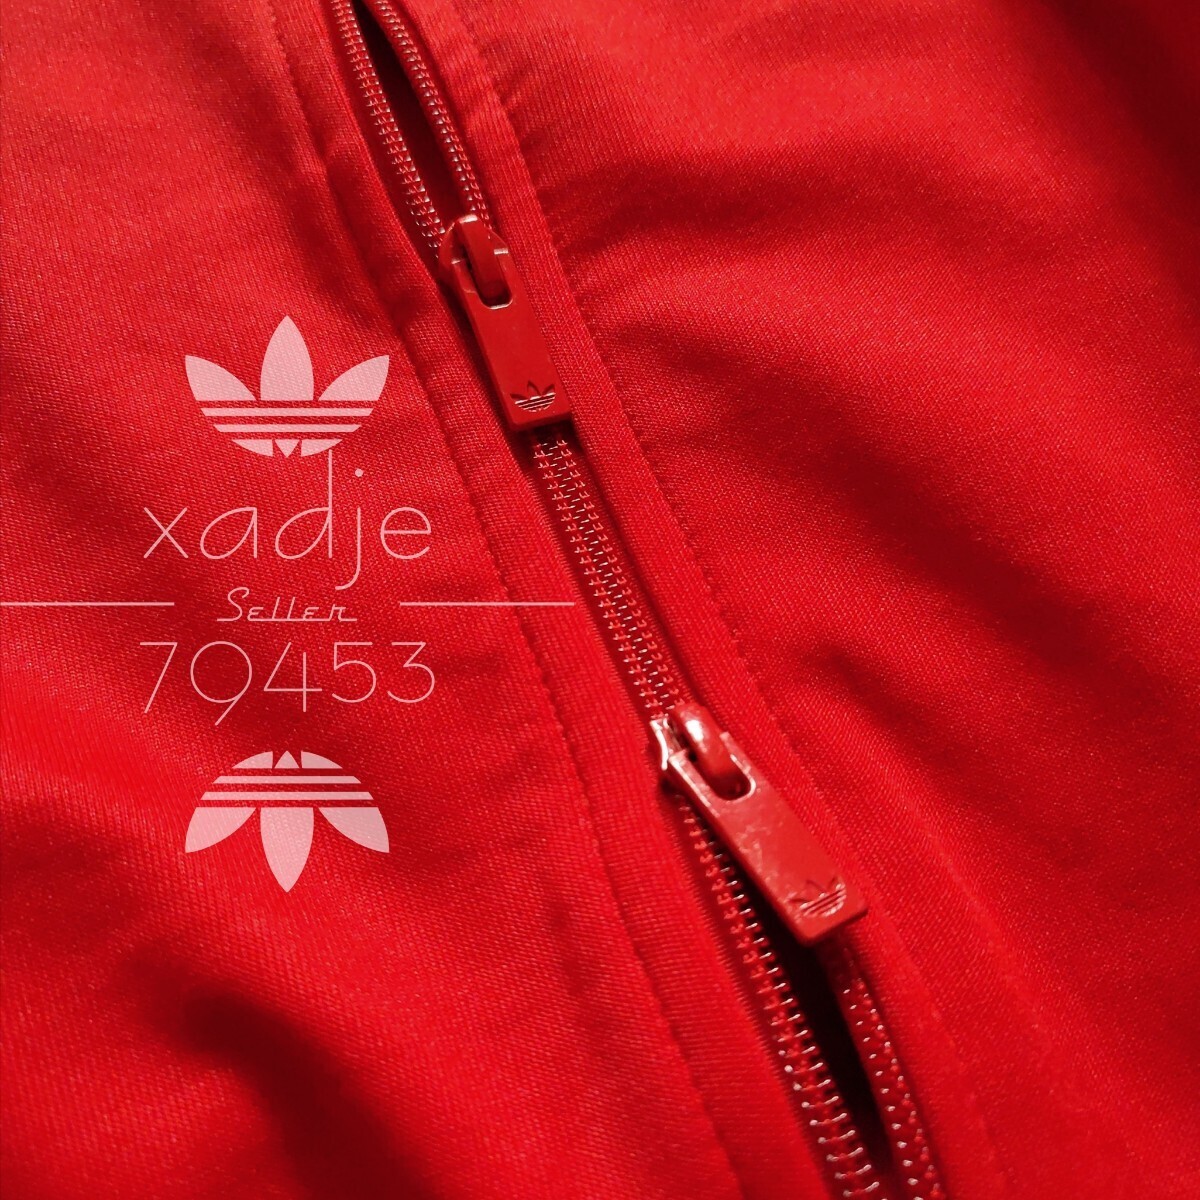 新品 正規品 adidas originals アディダス オリジナルス ジャージ 上下セット ジャケット パンツ セットアップ ロゴ刺繍 赤 レッド 白 L_画像5